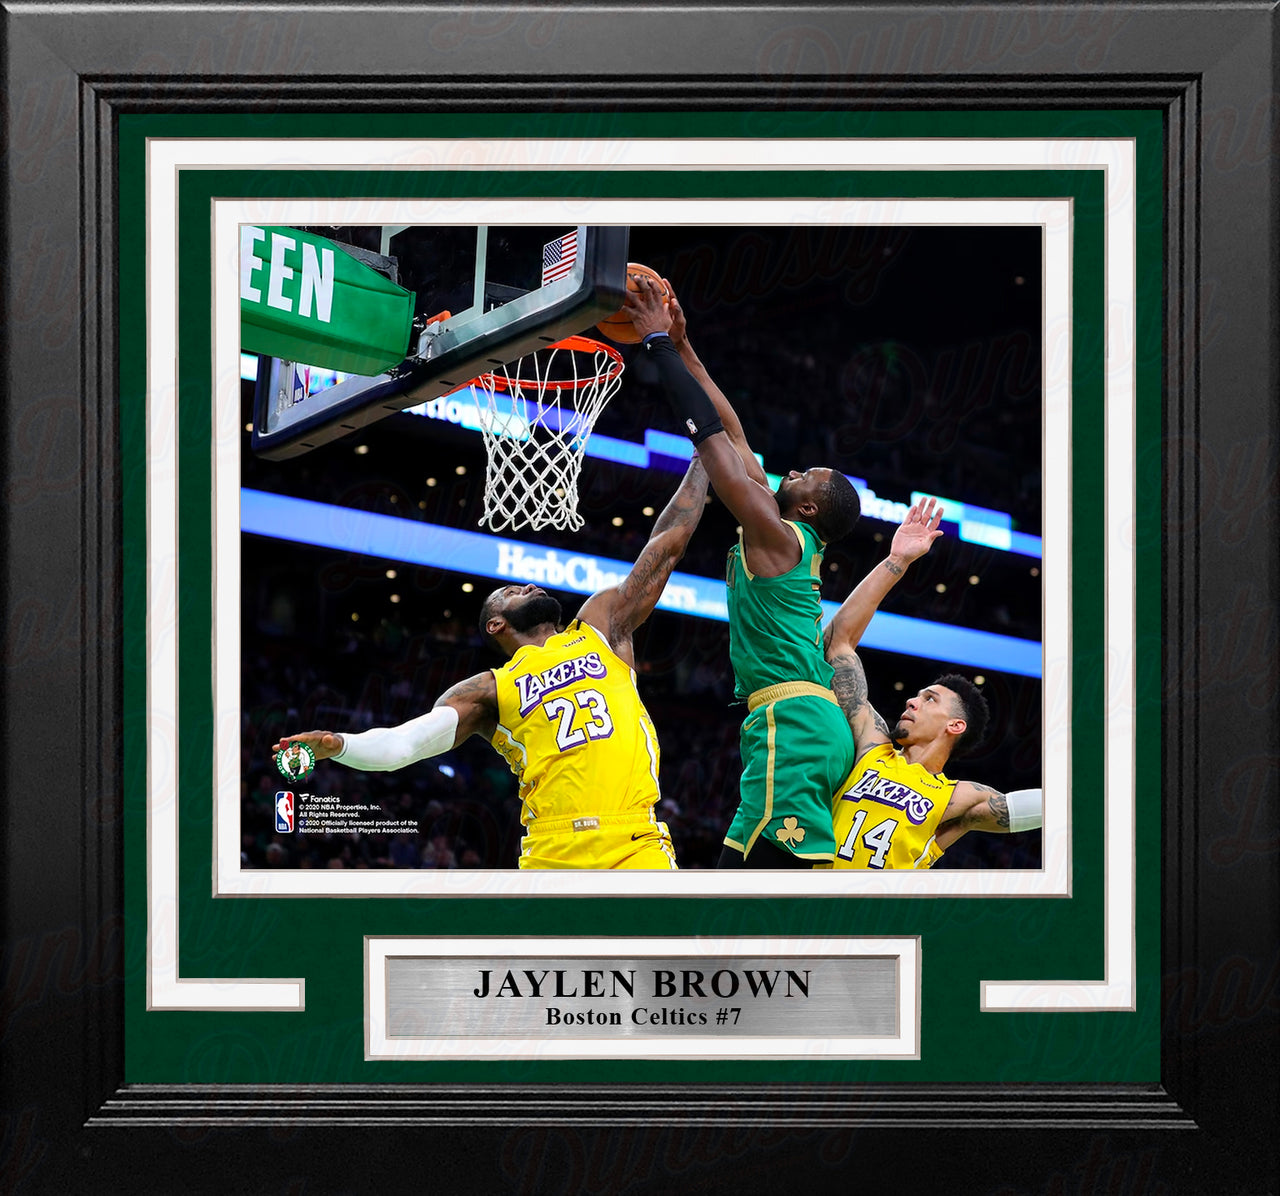 Jaylen Brown Dunks Over LeBron Boston Celtics 8" x 10" Framed Basketball Photo - Dynasty Sports & Framing 